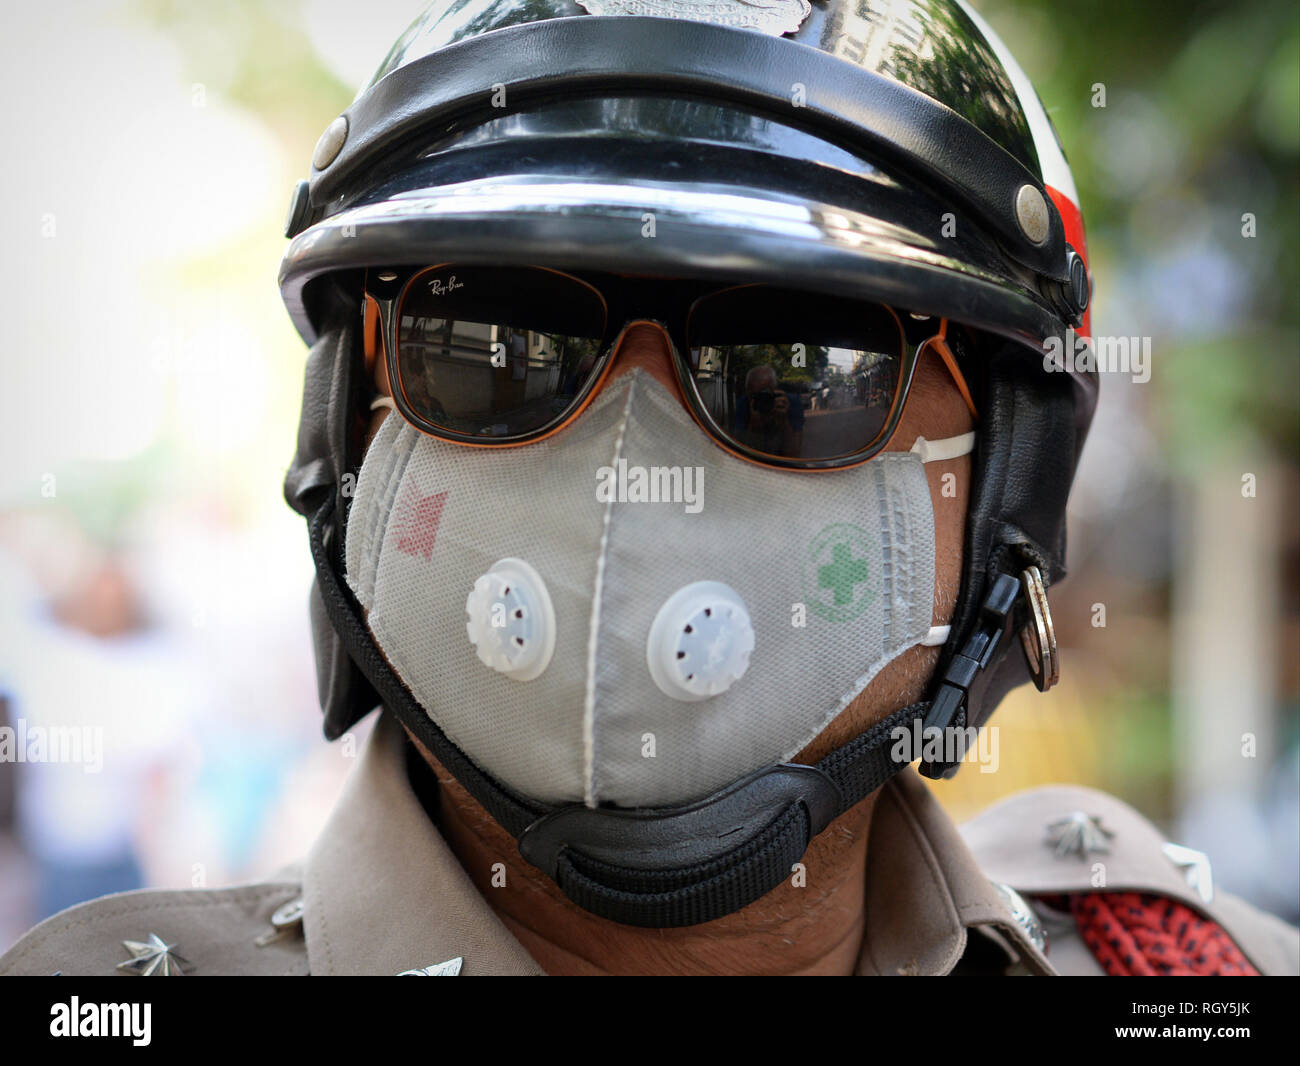 Royal Thai police moto porte des lunettes miroir et un masque de protection dans la pollution de Bangkok. Banque D'Images